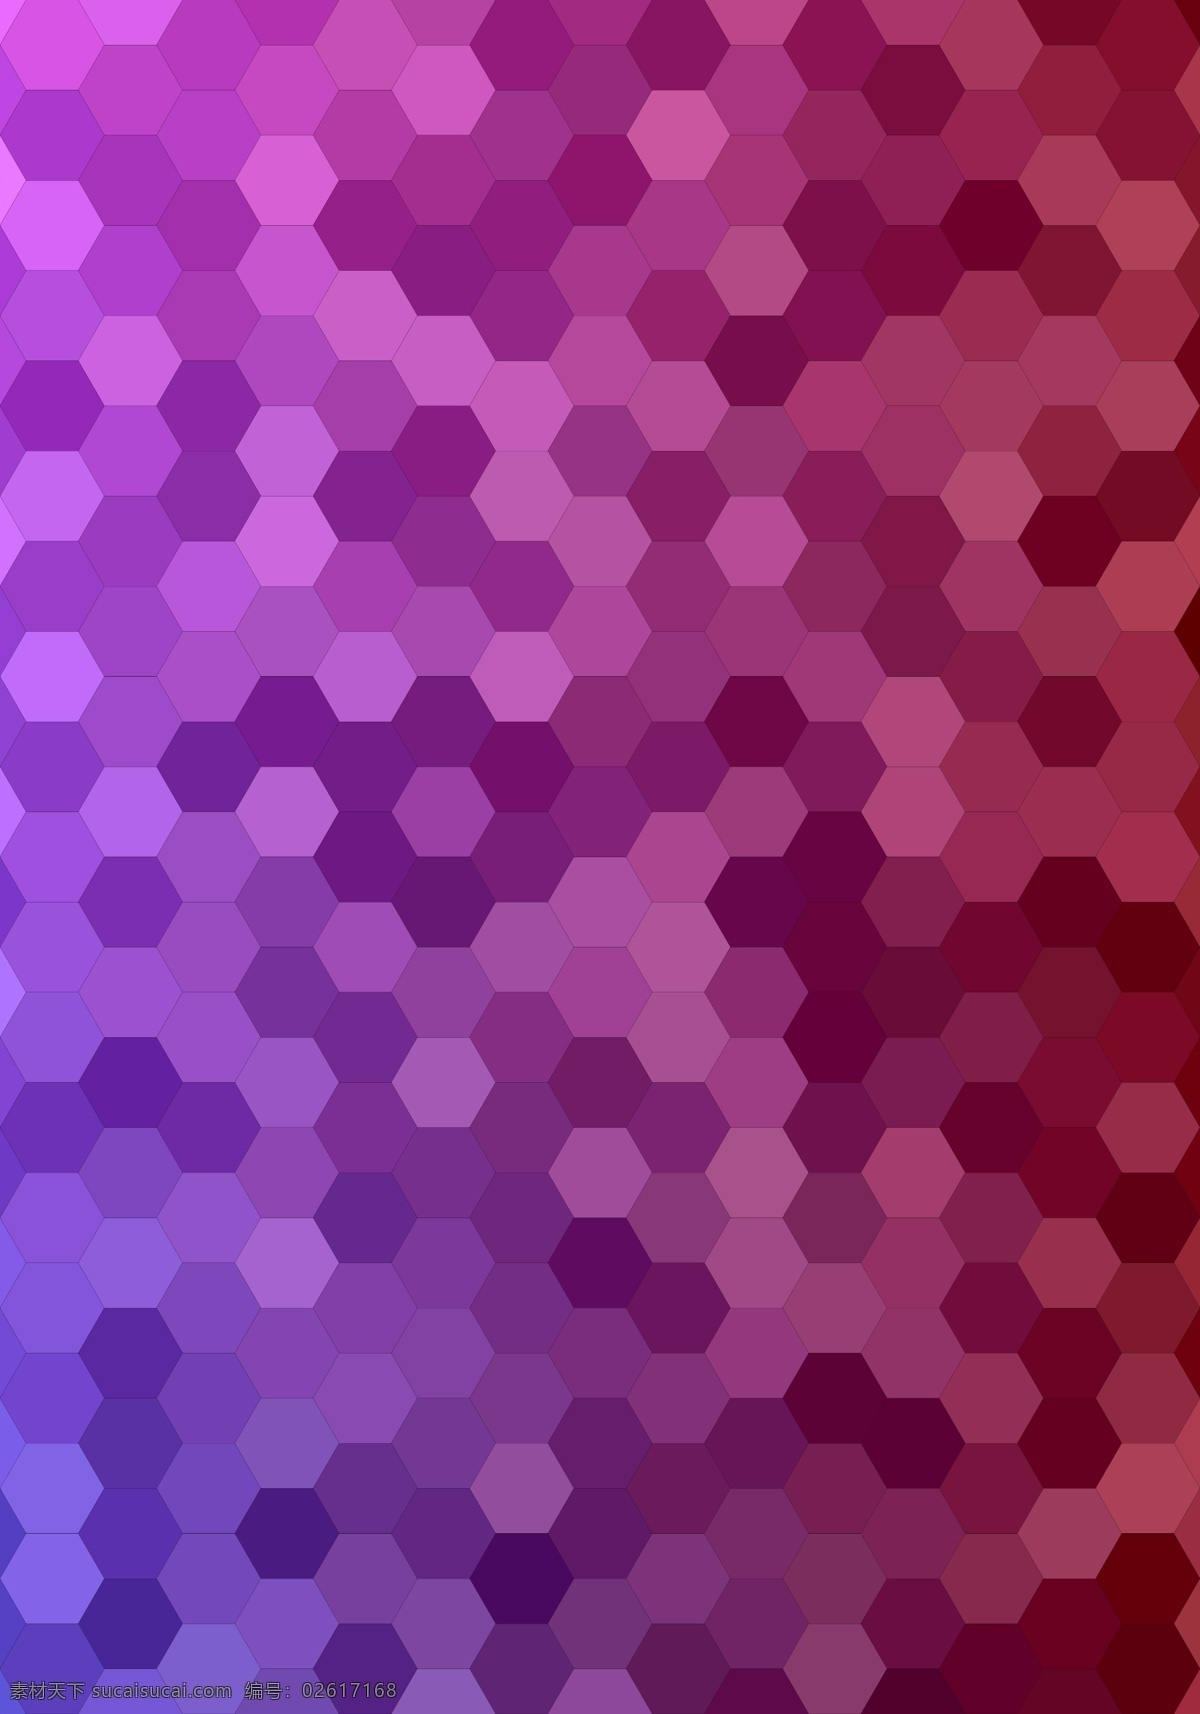 摘要 六角形 瓷砖 马赛克 背景 图案 小册子 抽象背景 抽象 技术 计算机 模板 几何 纸张 宣传册模板 粉红色 红色 布局 多边形 墙纸 几何图案 网页 图形